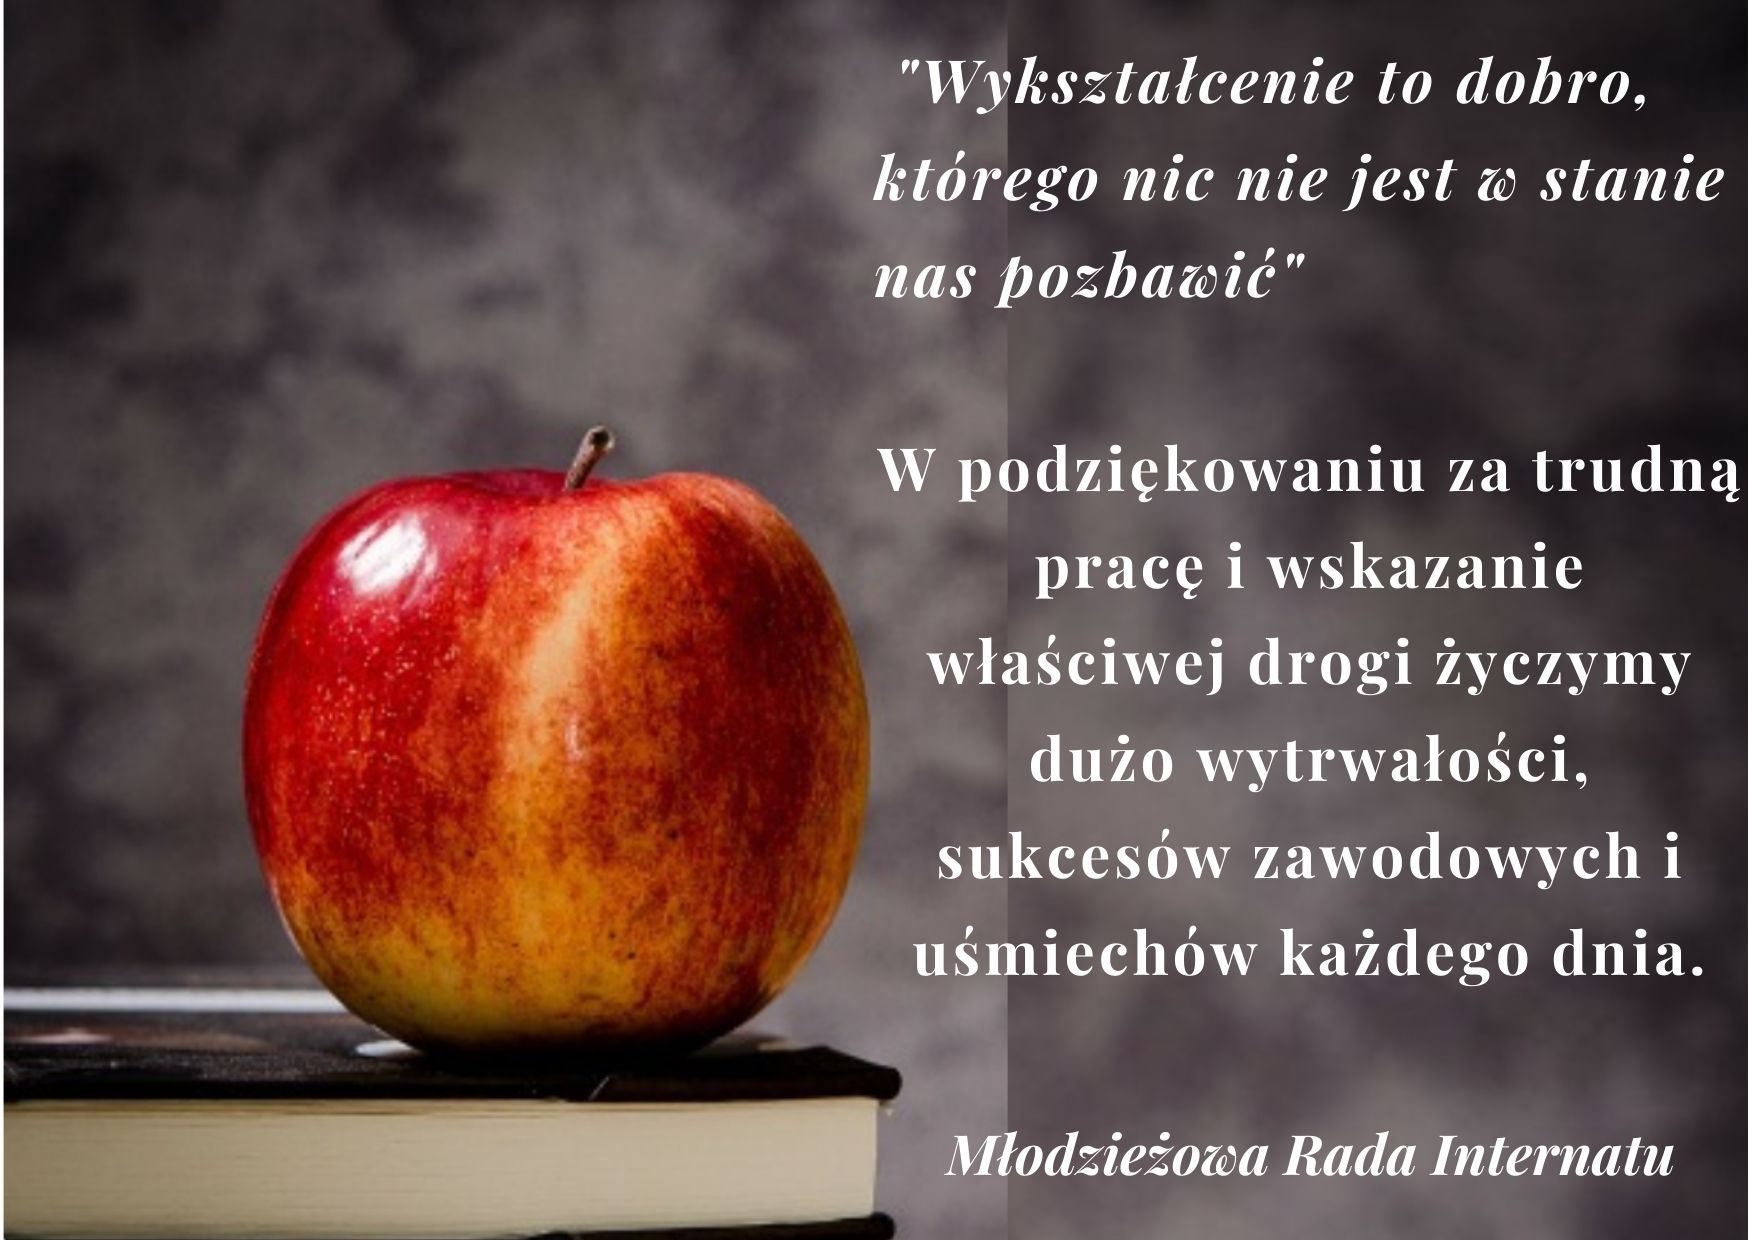 Kartka przedstawiająca książkę i jabłko wraz z życzeniami od Młodzieżowej Rady Internatu z okazji Dnia Edukacji Narodowej. Rozpoczyna się cytatem: „Wykształcenie to dobro, którego nic nie jest w stanie nas pozbawić”.